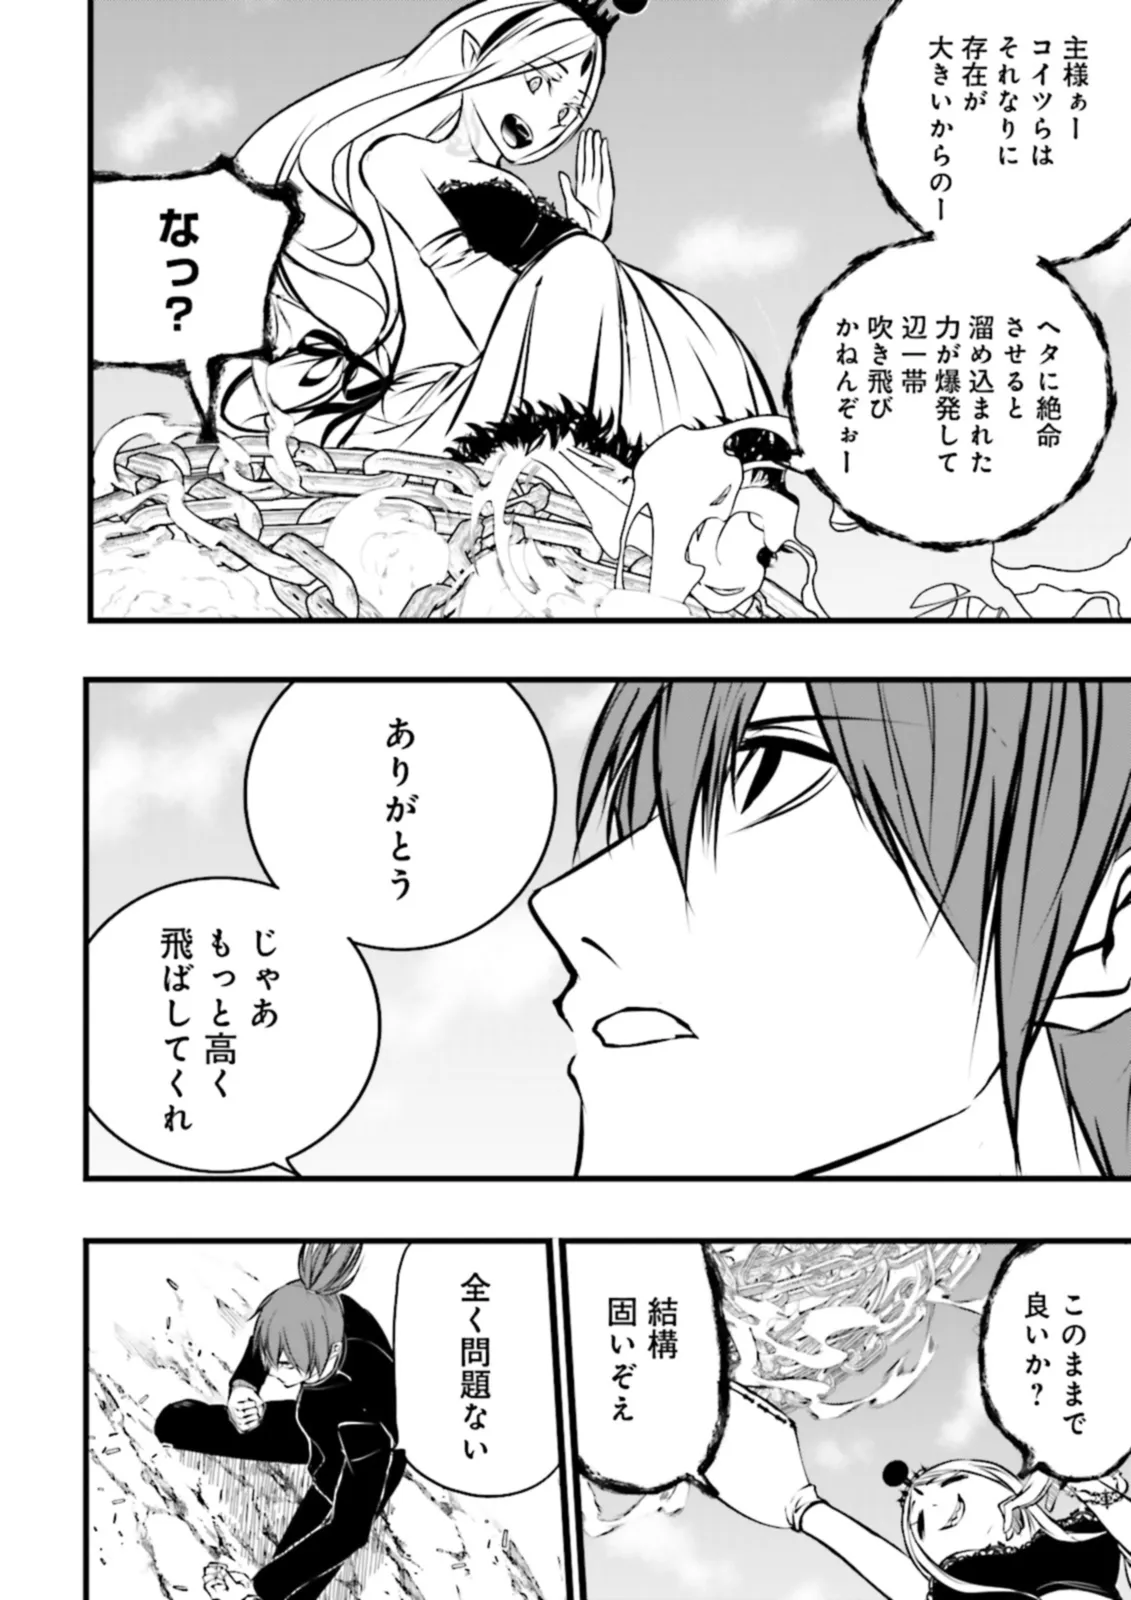 Sukiru Ga Nakereba Level wo Ageru ~ 99 Ga Kansuto No Sekai De Reberu 800 Man Kara Sutato ~ - Chapter 36.3 - Page 10